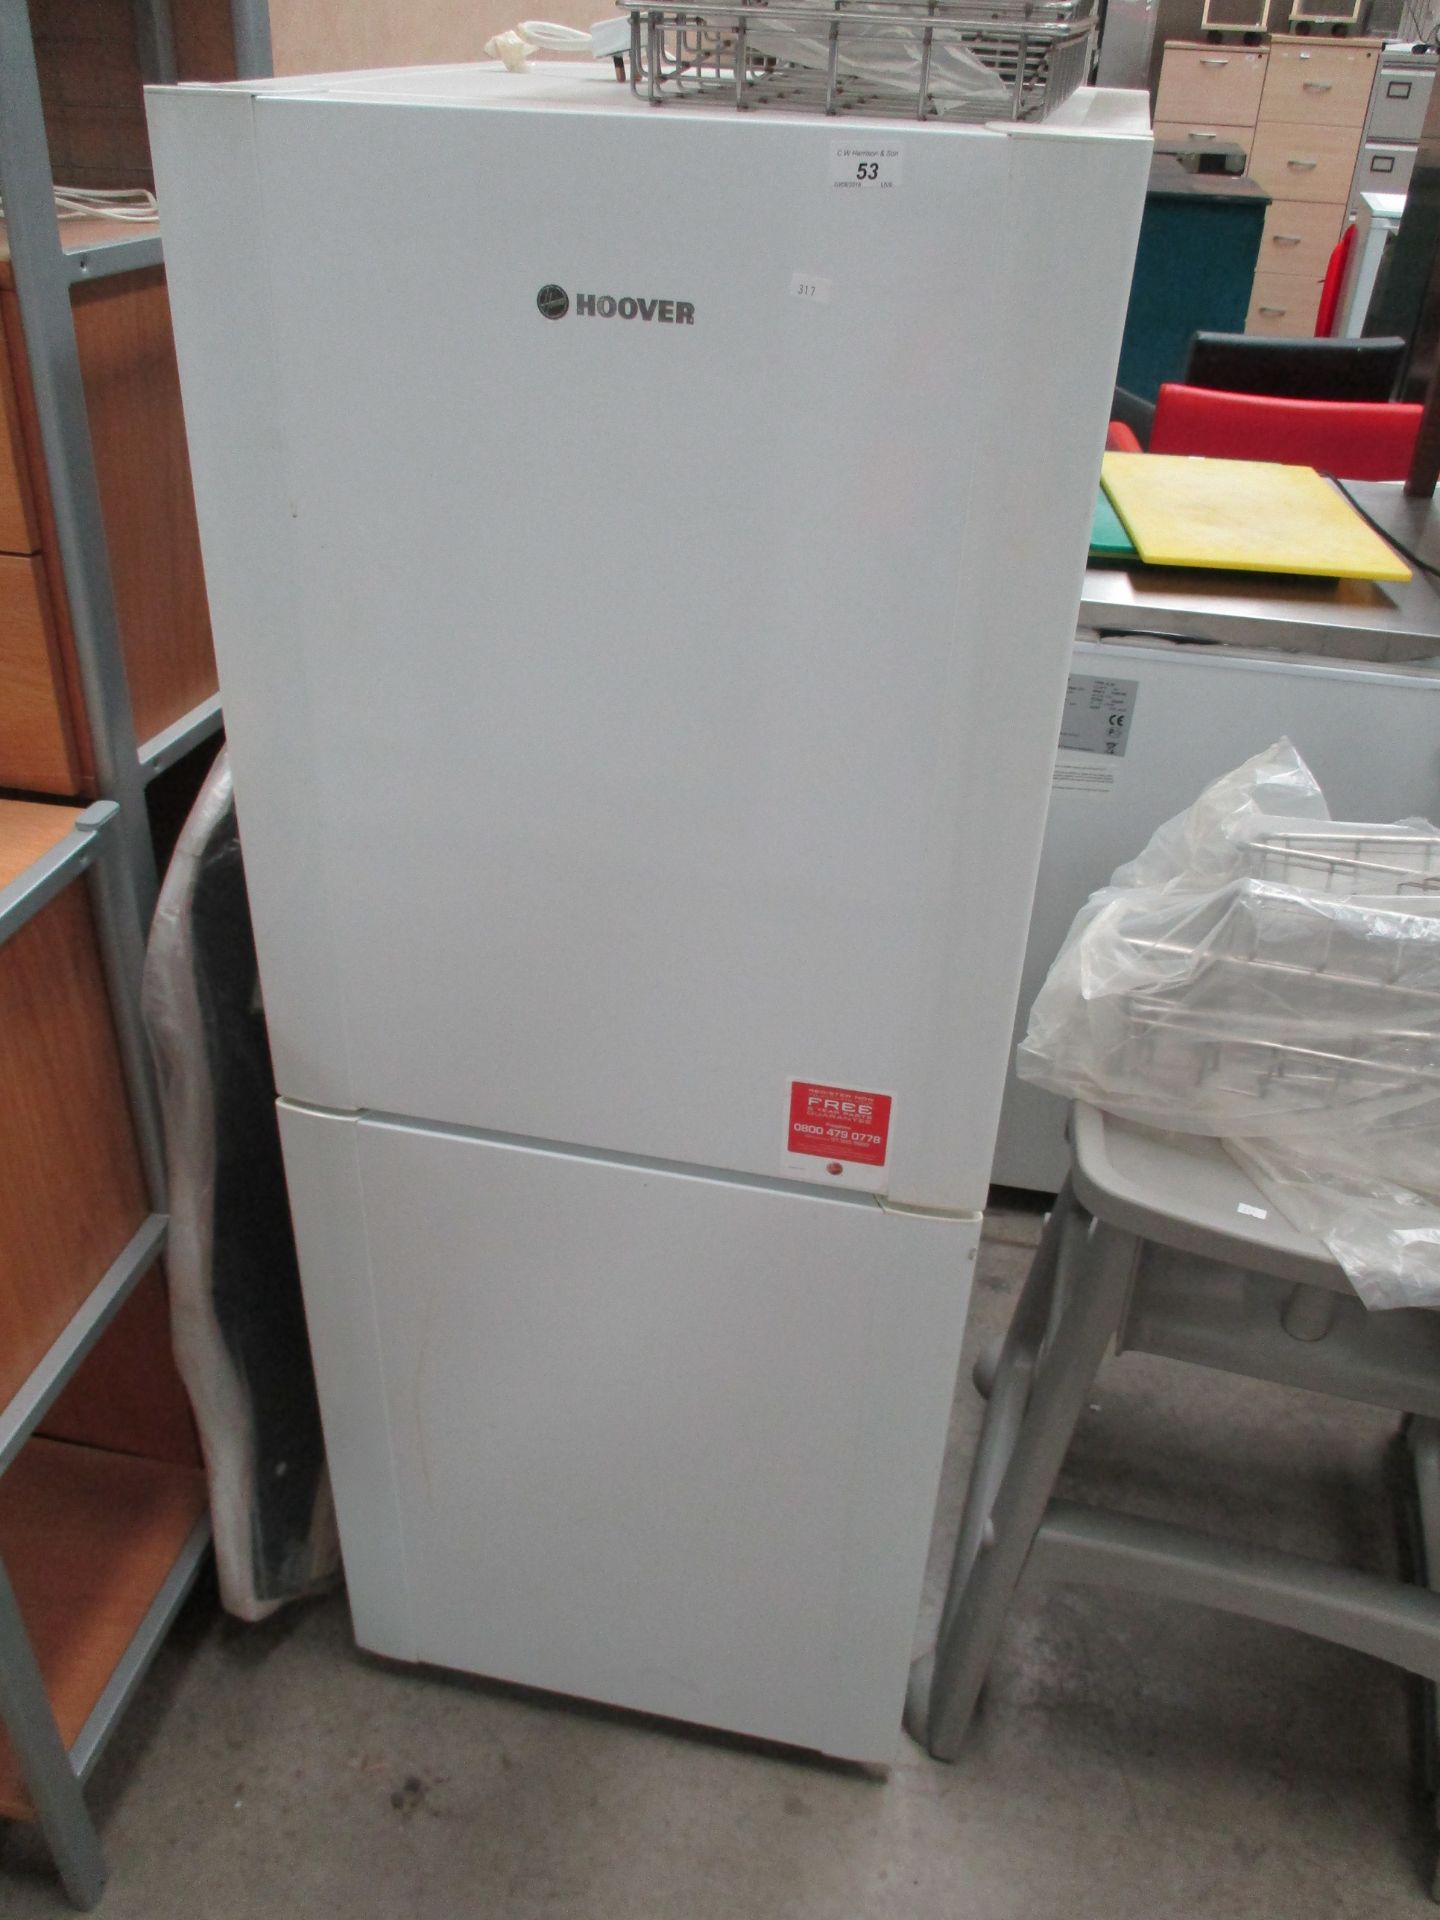 A Hoover white upright fridge/freezer